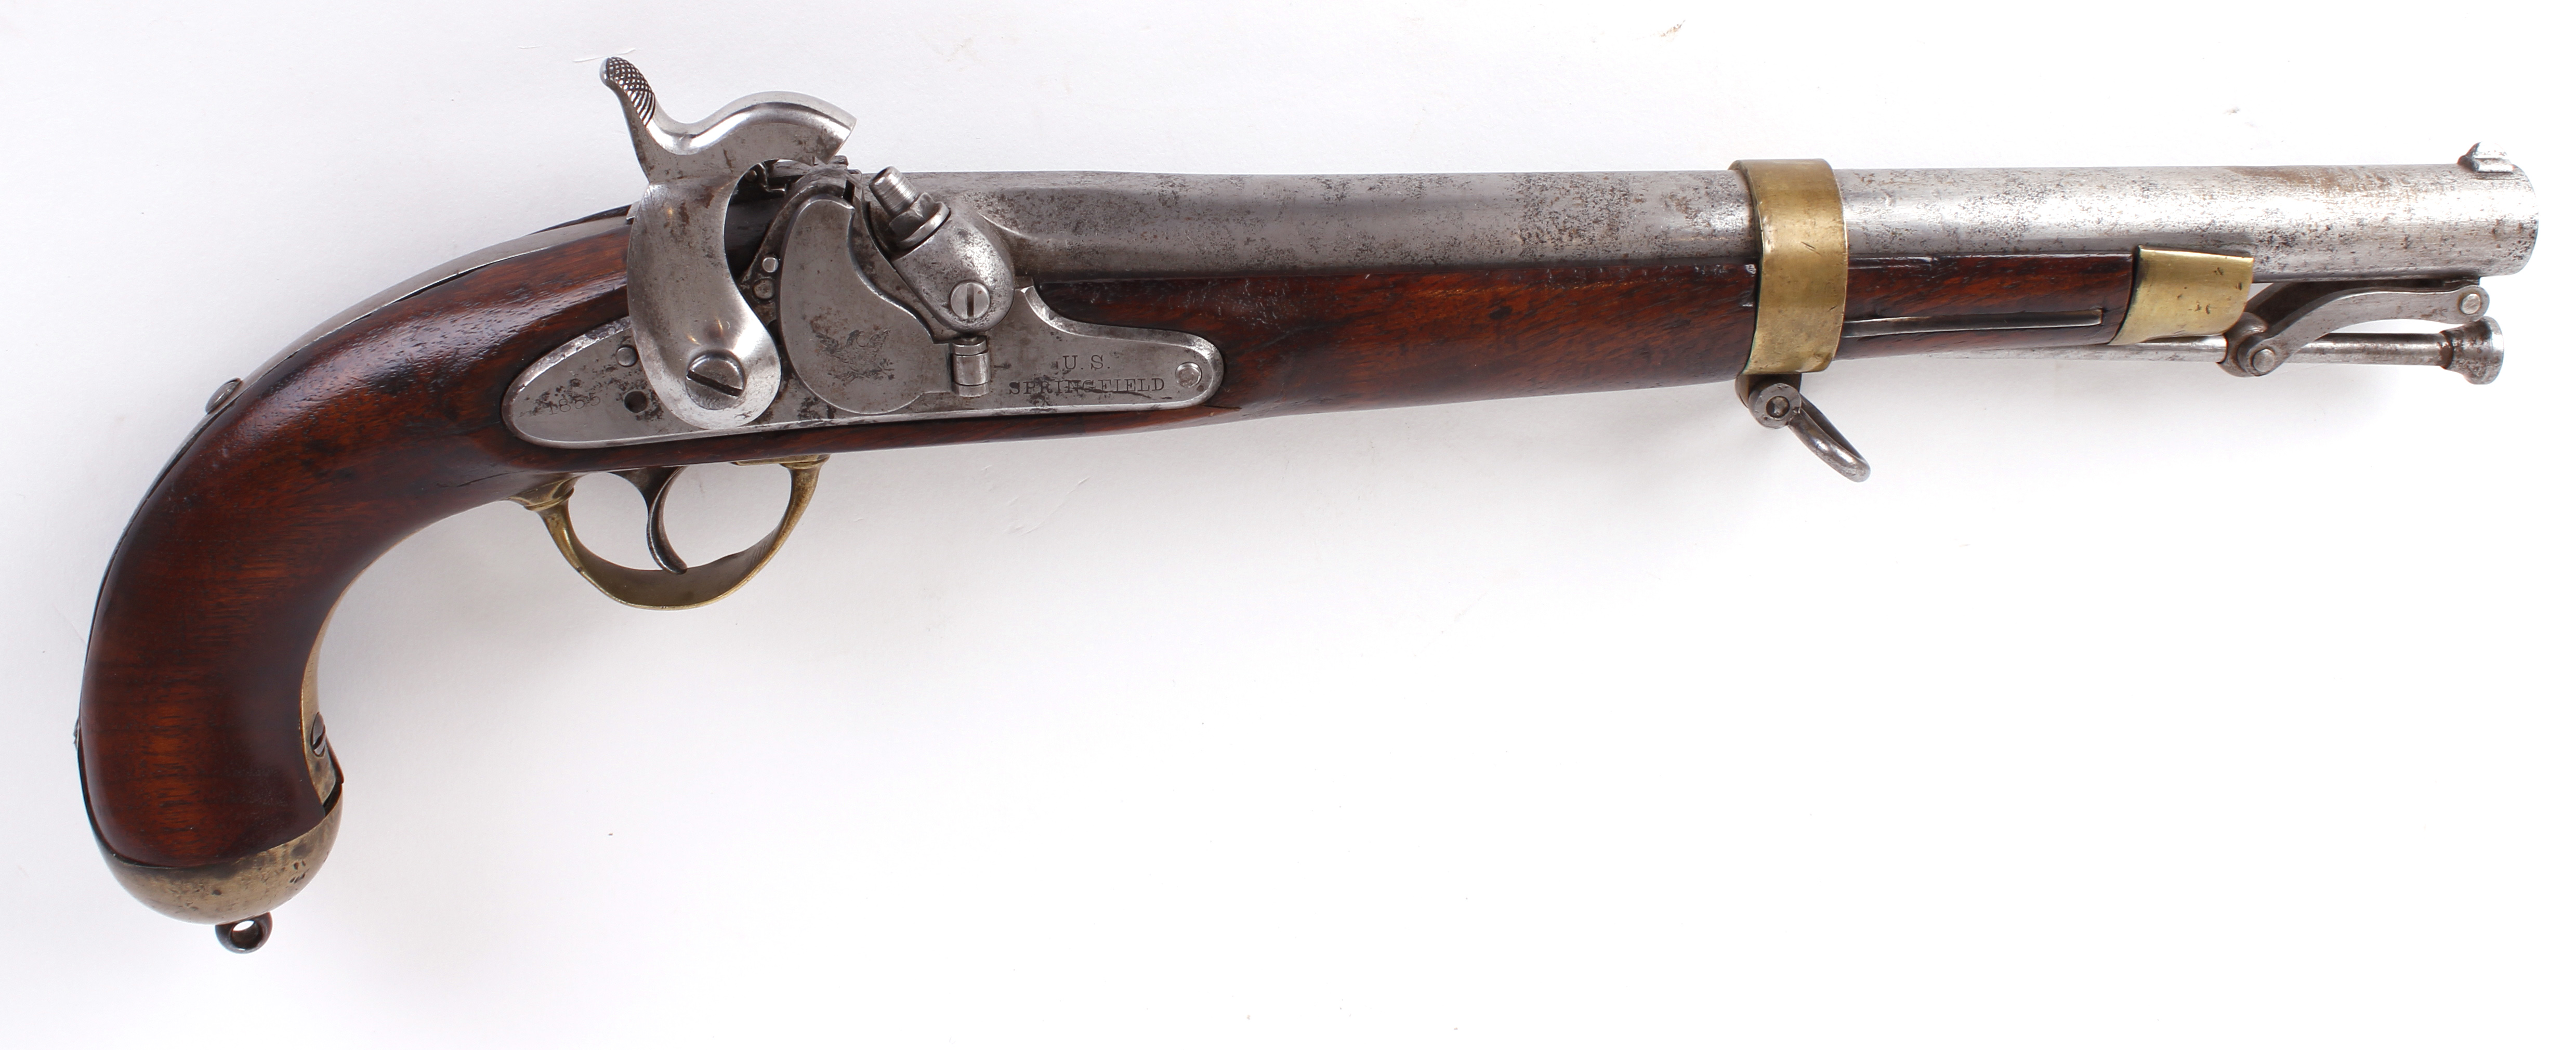 (S58) .58 (Minié ball) Springfield Pistol Carbine, 1855 pattern, 12 ins round brass bound three